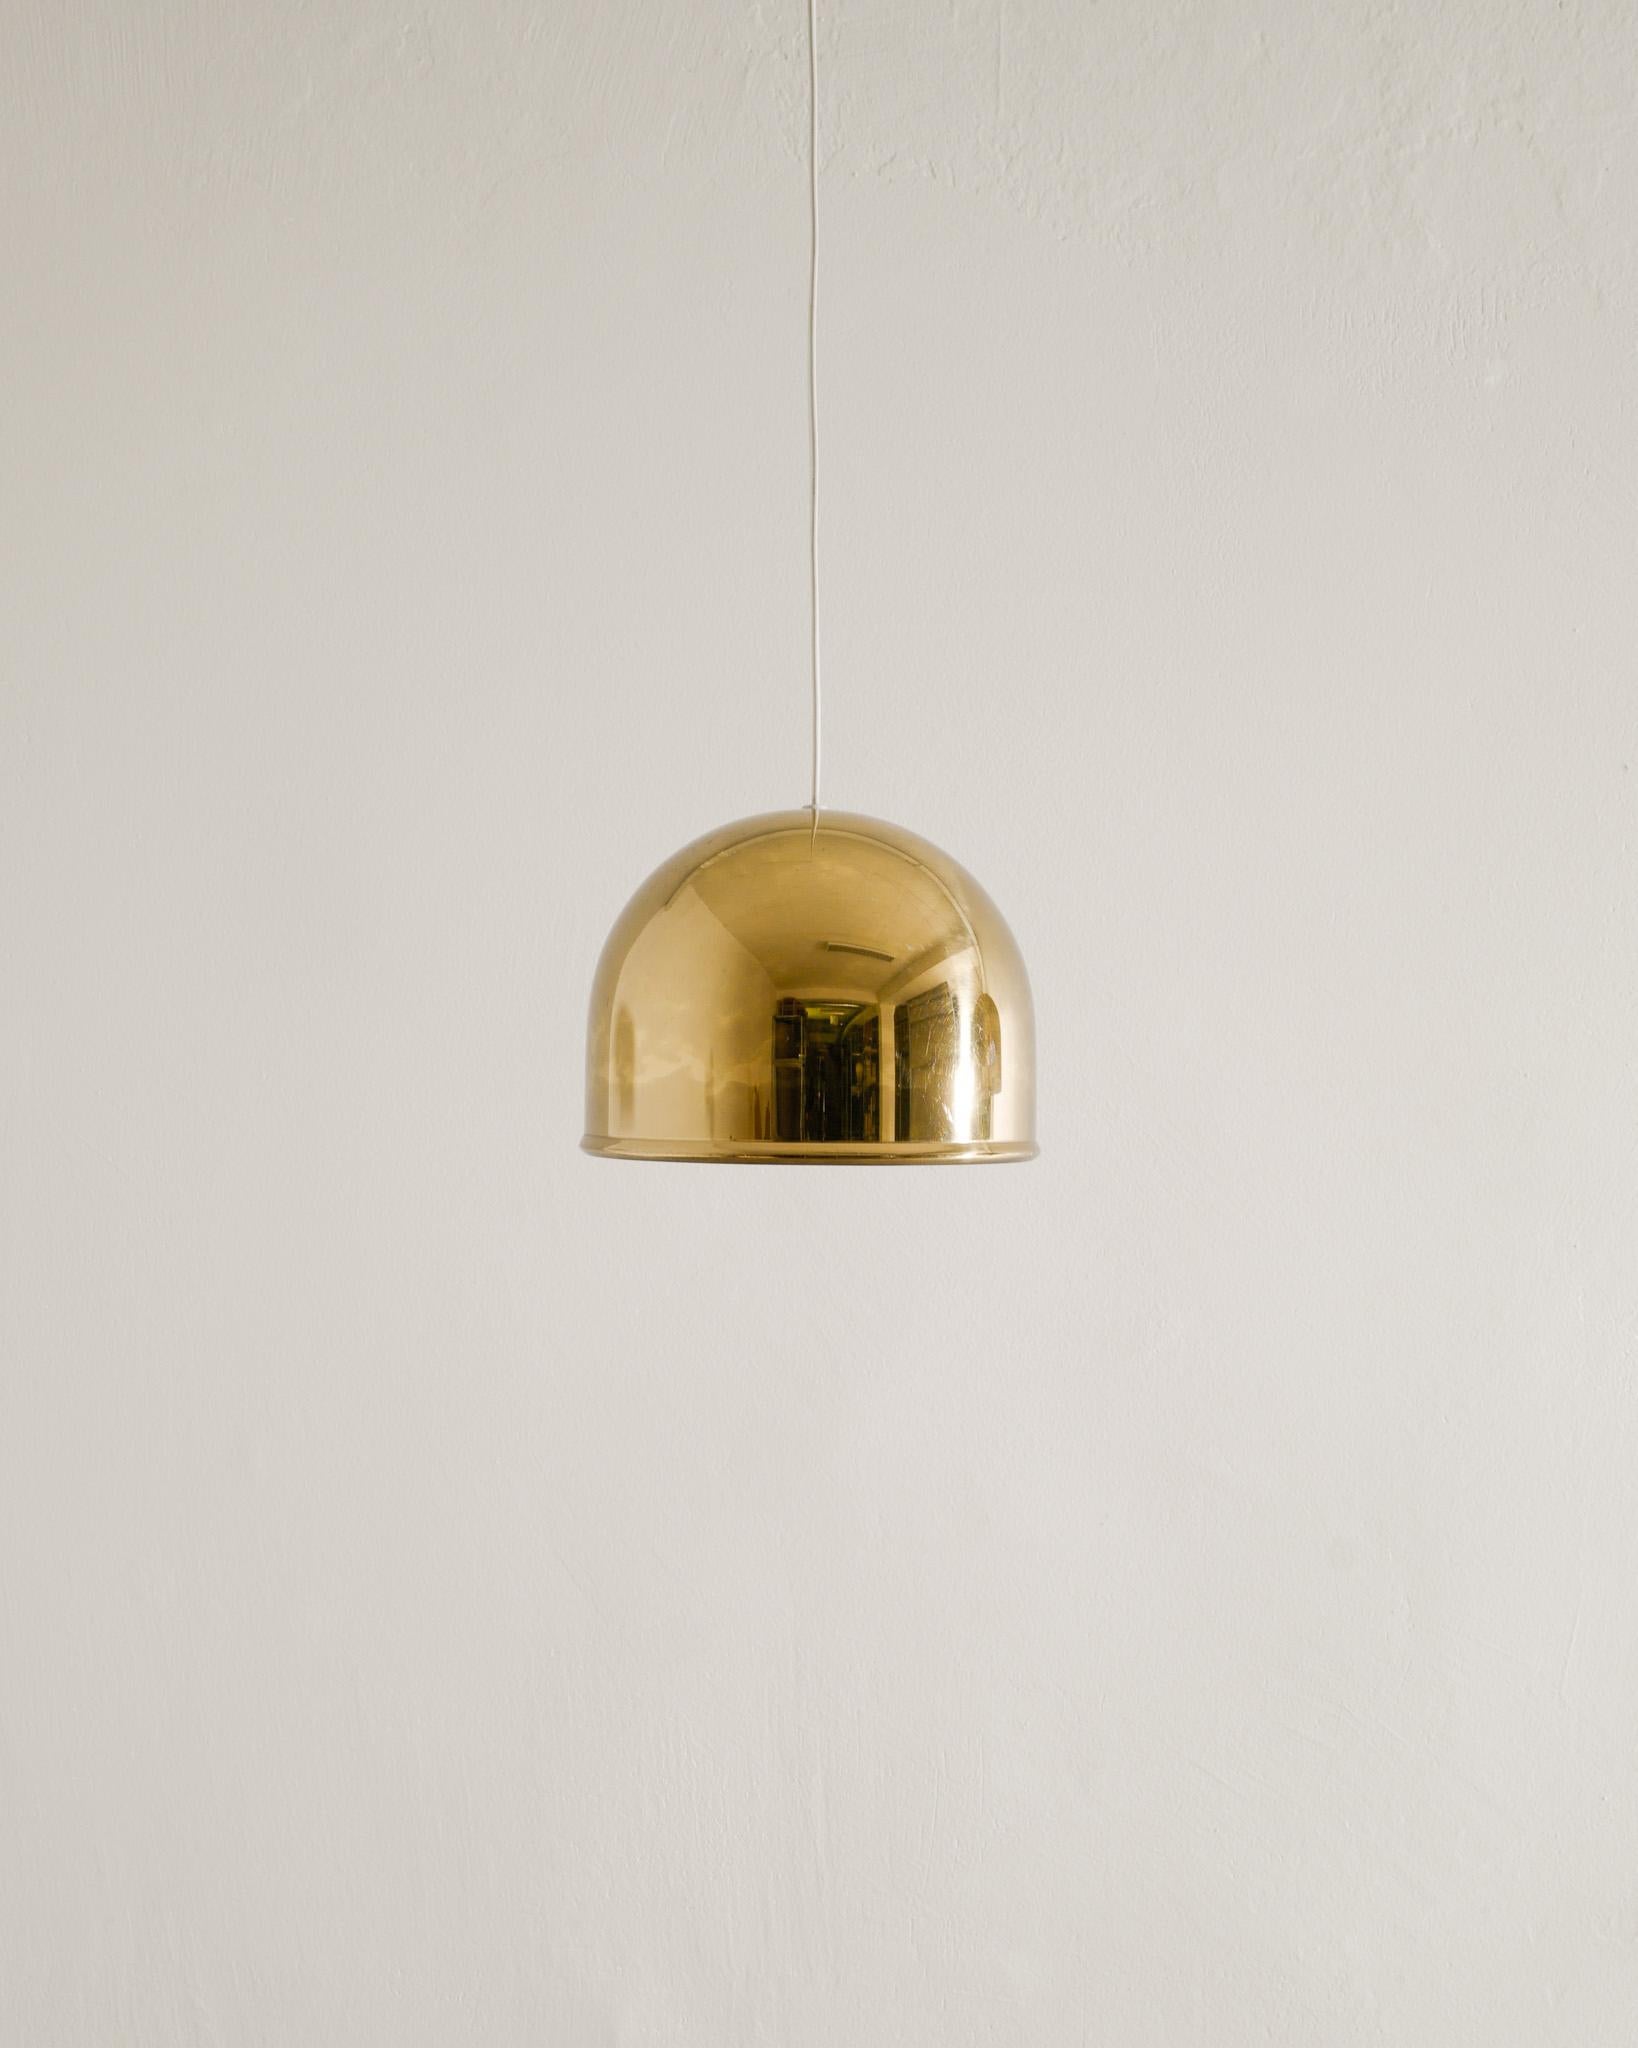 Scandinavian Modern Eje Ahlgren Brass Ceiling Pendants Lamps Produced by Bergboms, Sweden 1960s For Sale